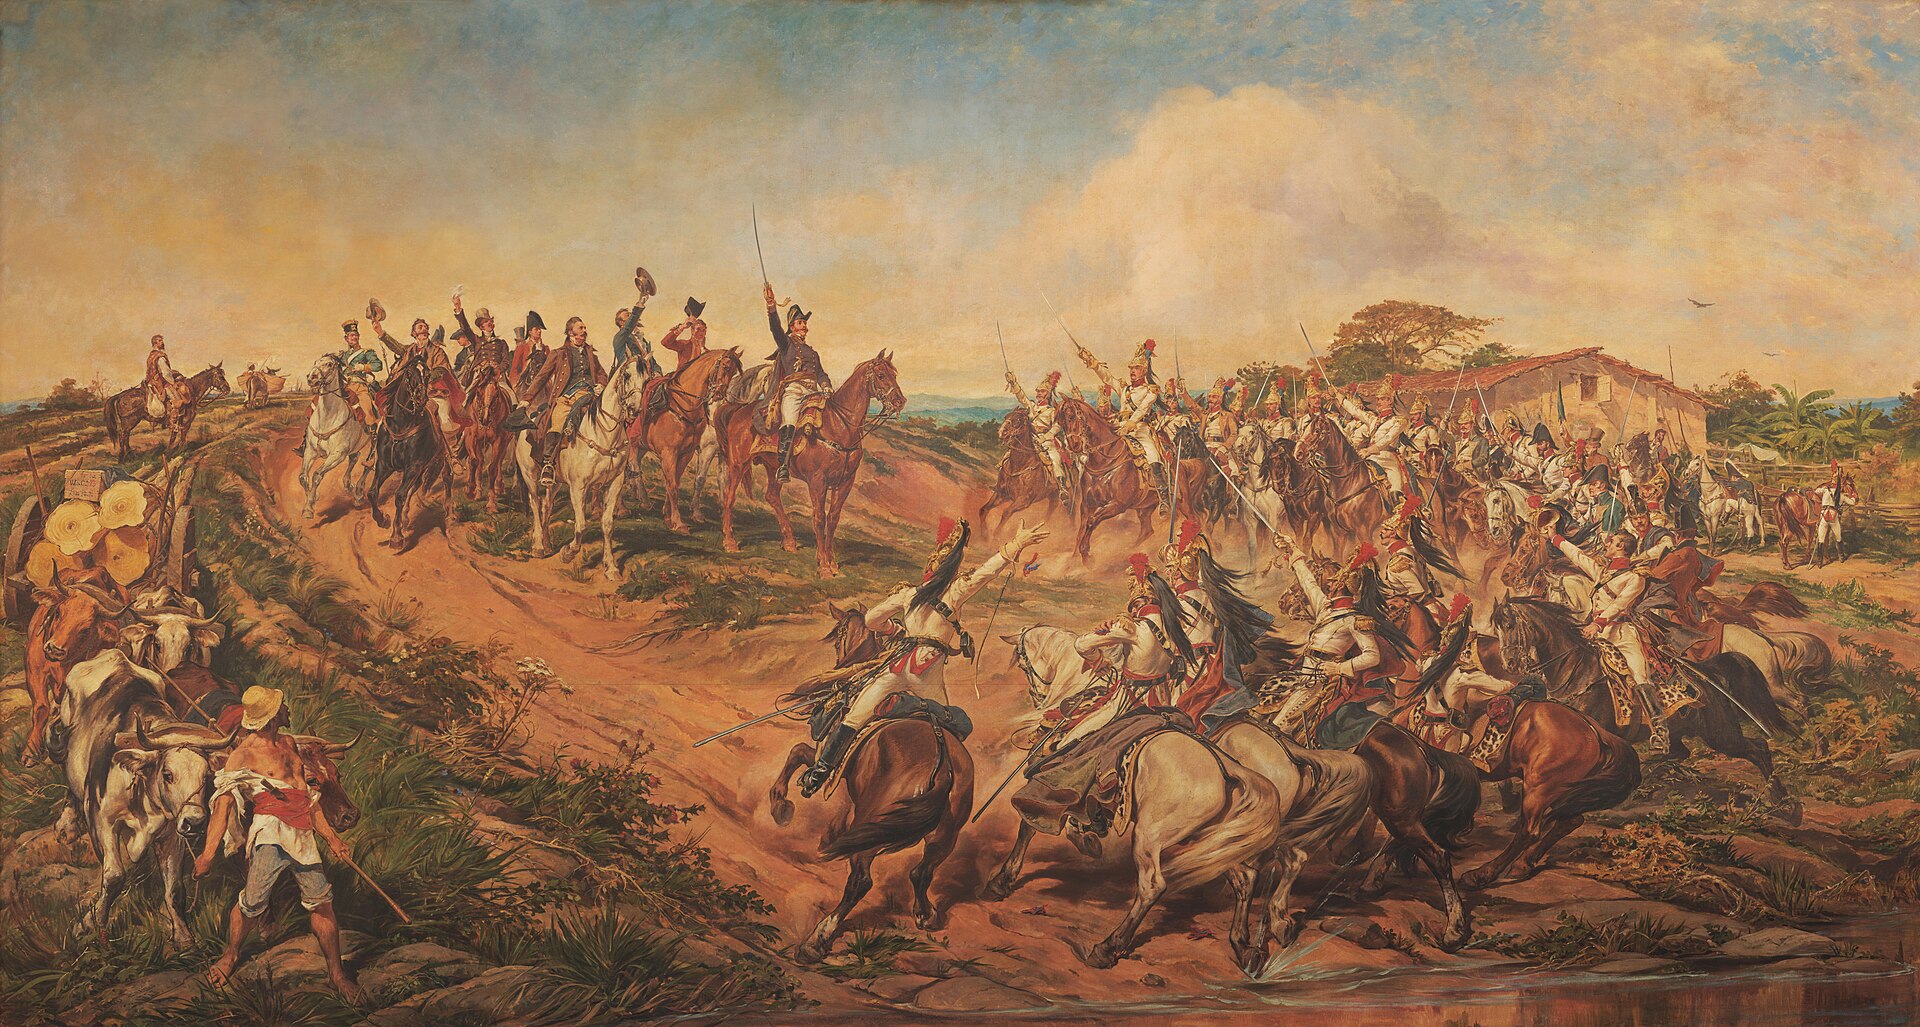 Pedro Américo, "Independência ou morte", 1888. Óleo sobre tela, 415 x 760 cmAcervo Museu Paulista, Universidade de São Paulo. Domínio público.